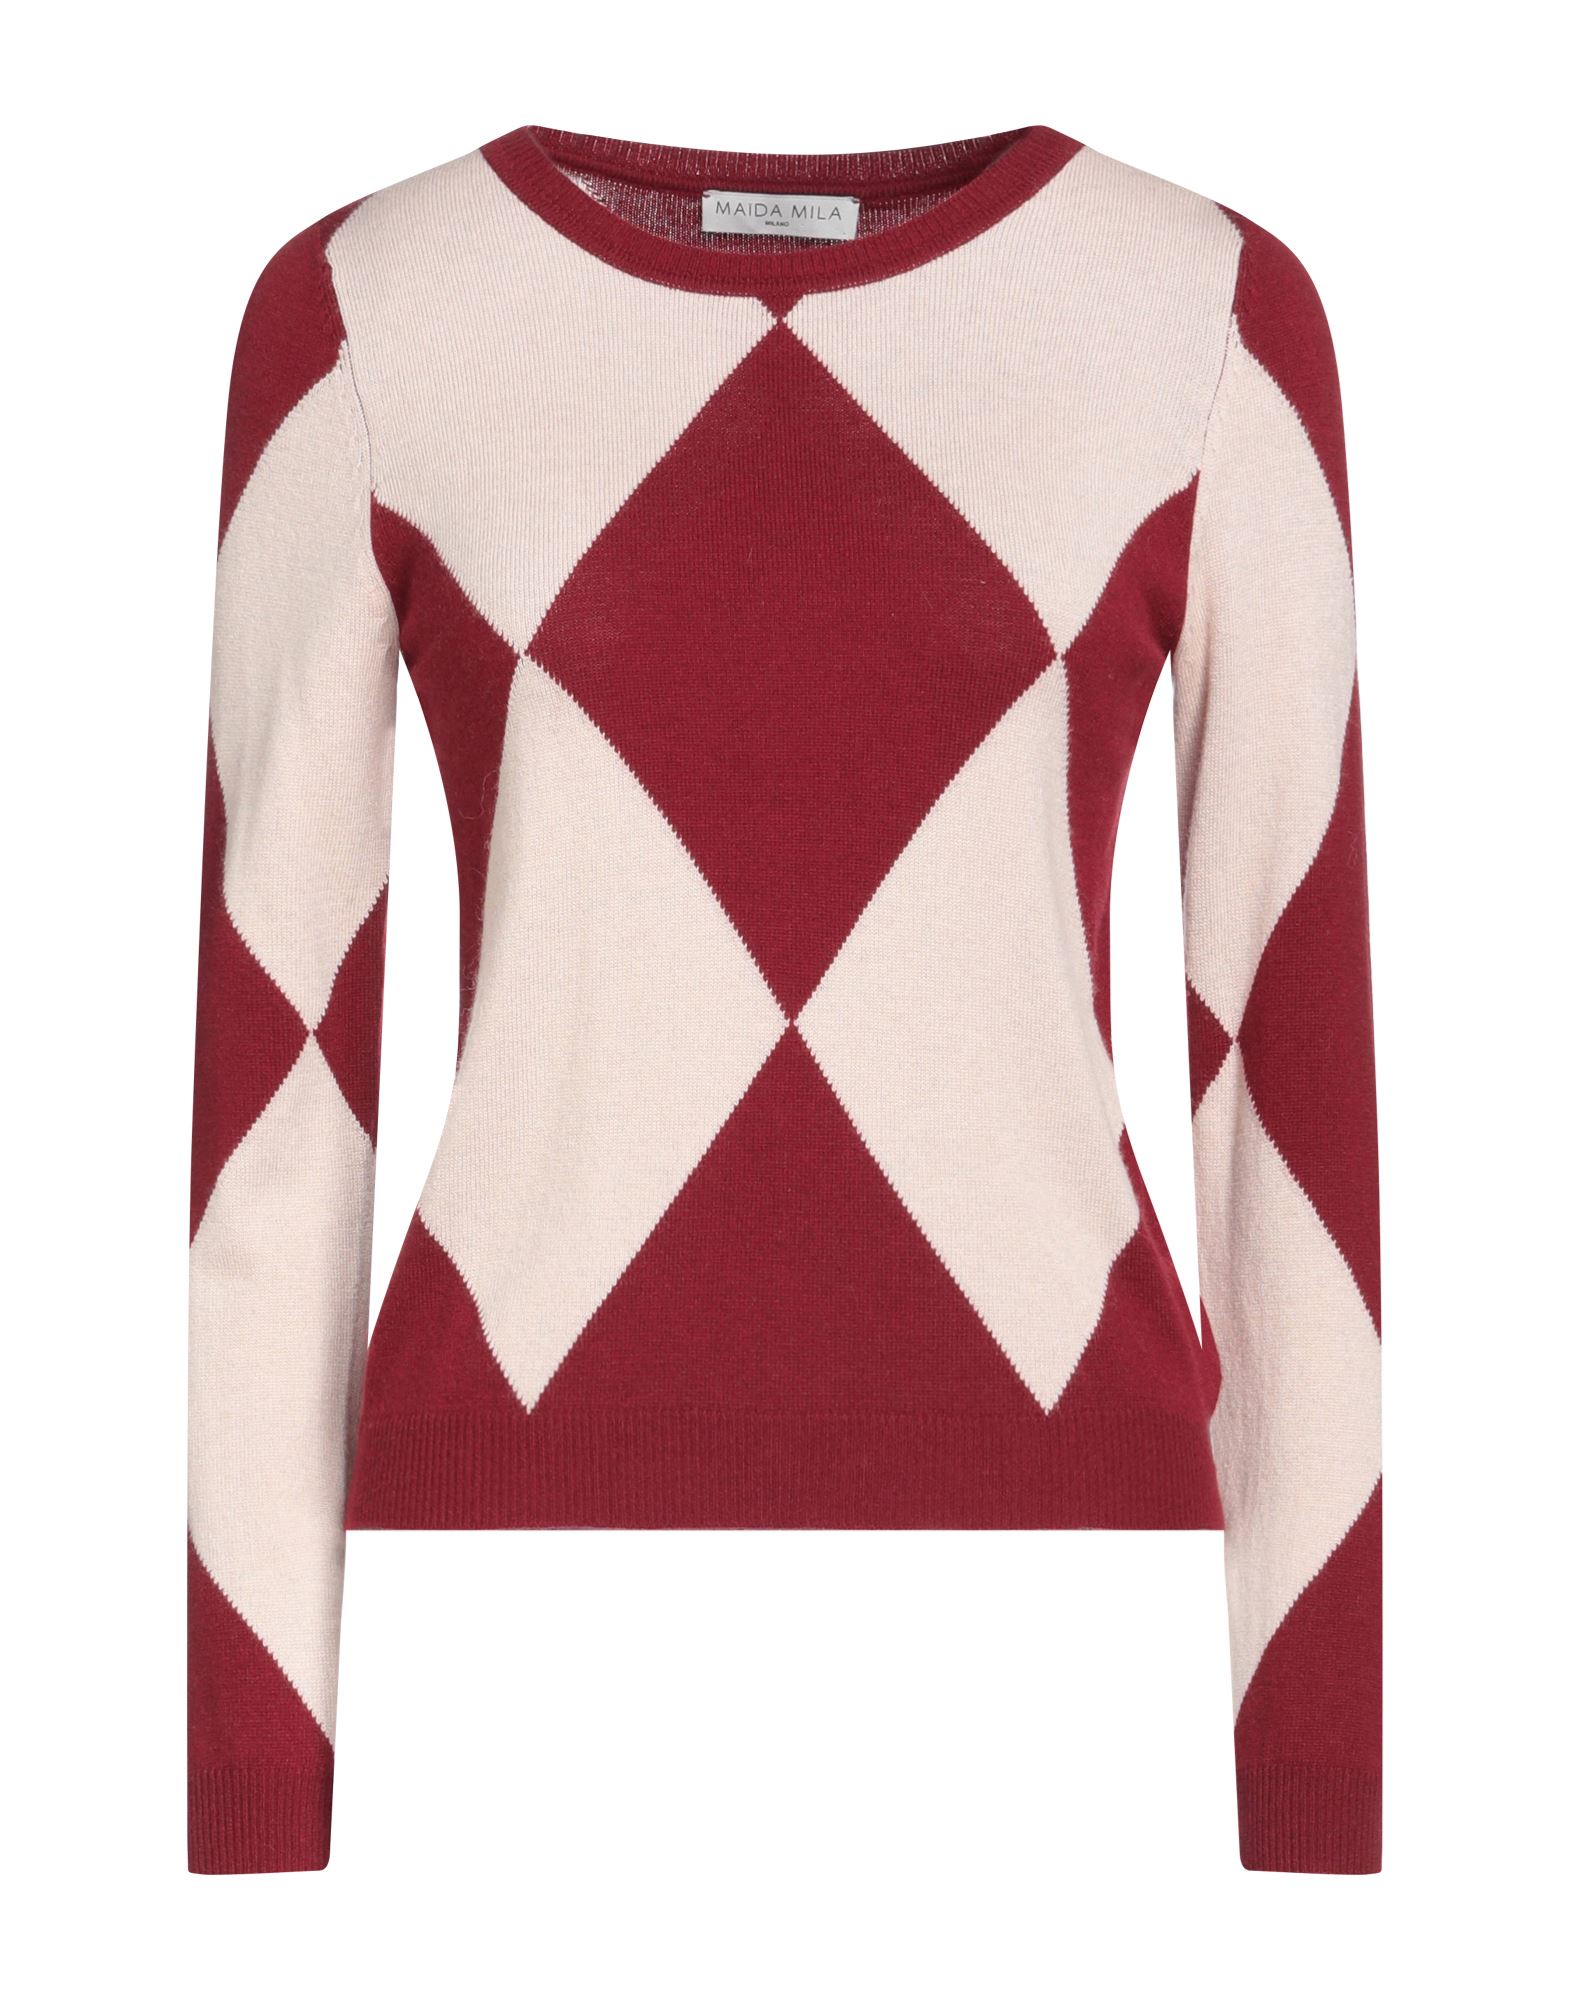 MAÏDA MILA Sweaters